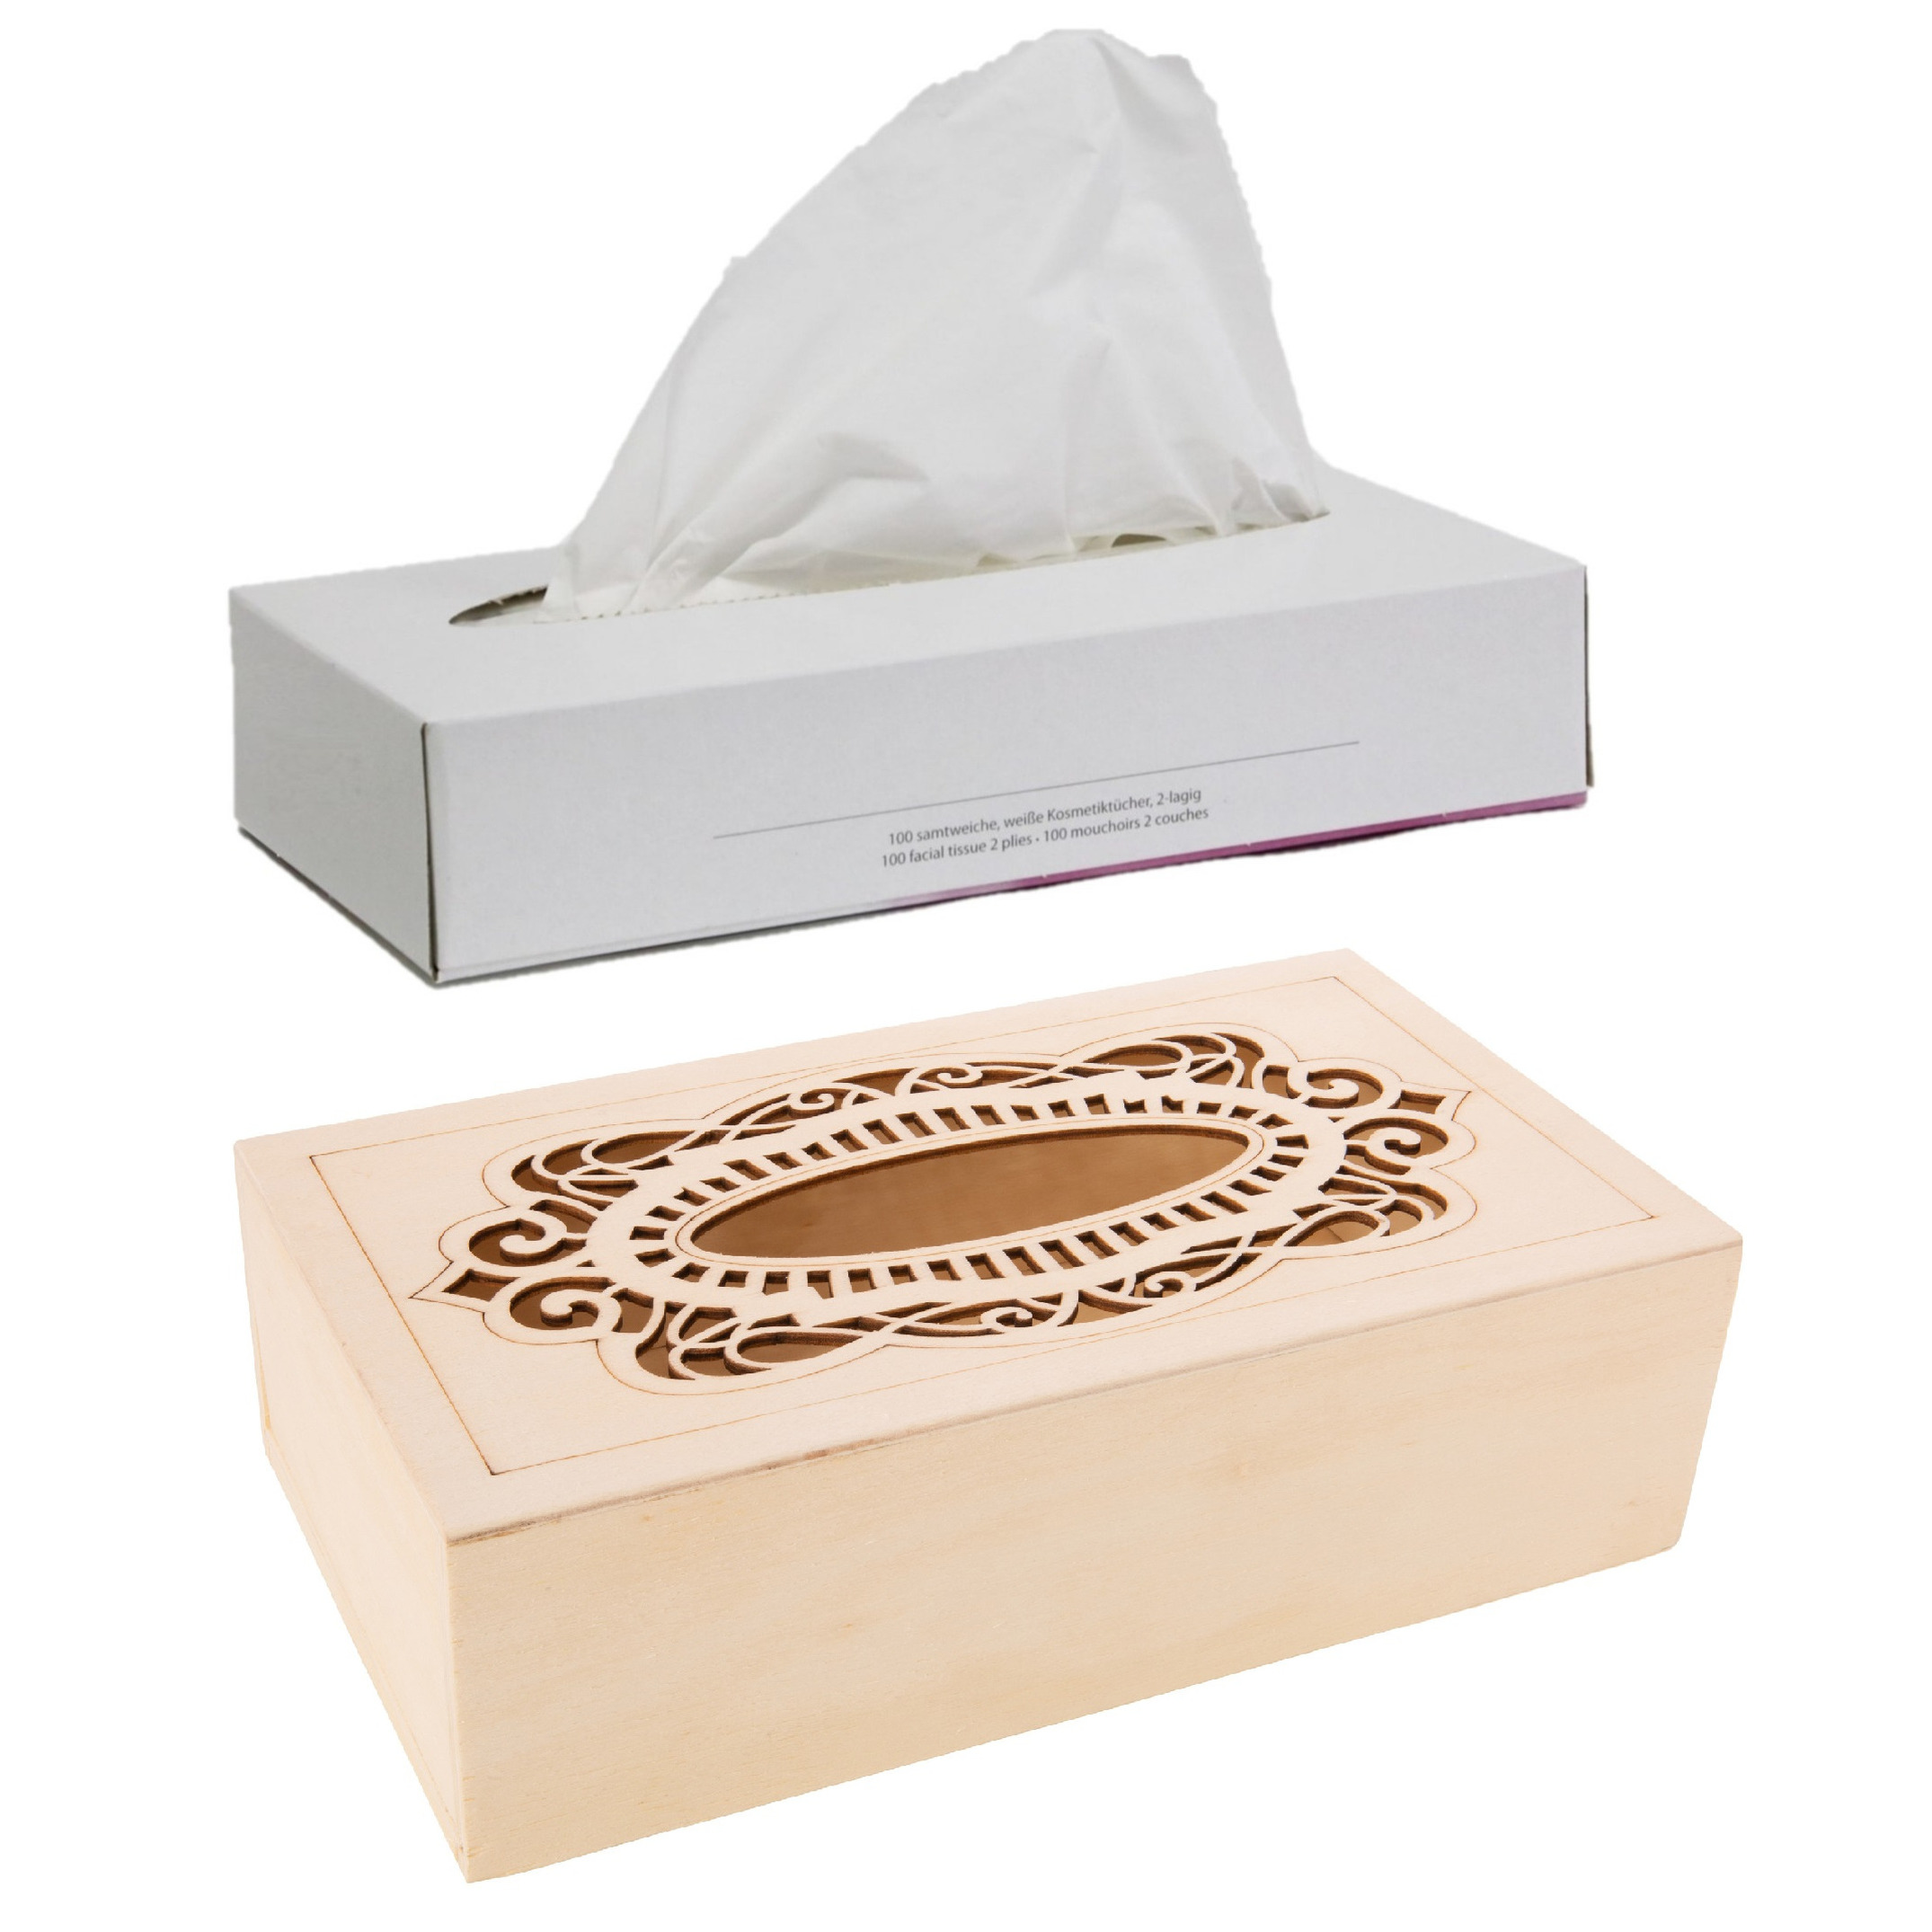 Tissuedoos-tissuebox van hout met sierlijk design 26 x 14 cm met vulling